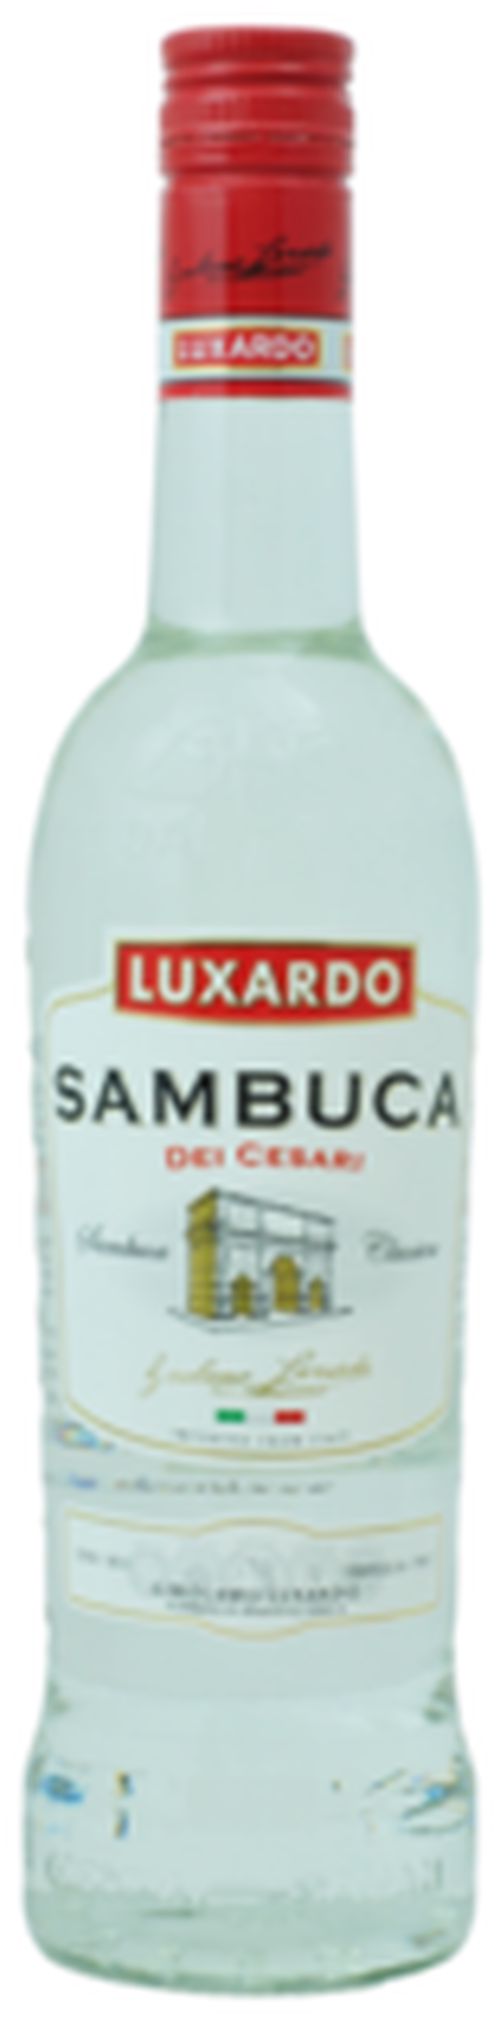 Luxardo Sambuca dei Cesari 38% 0.7L